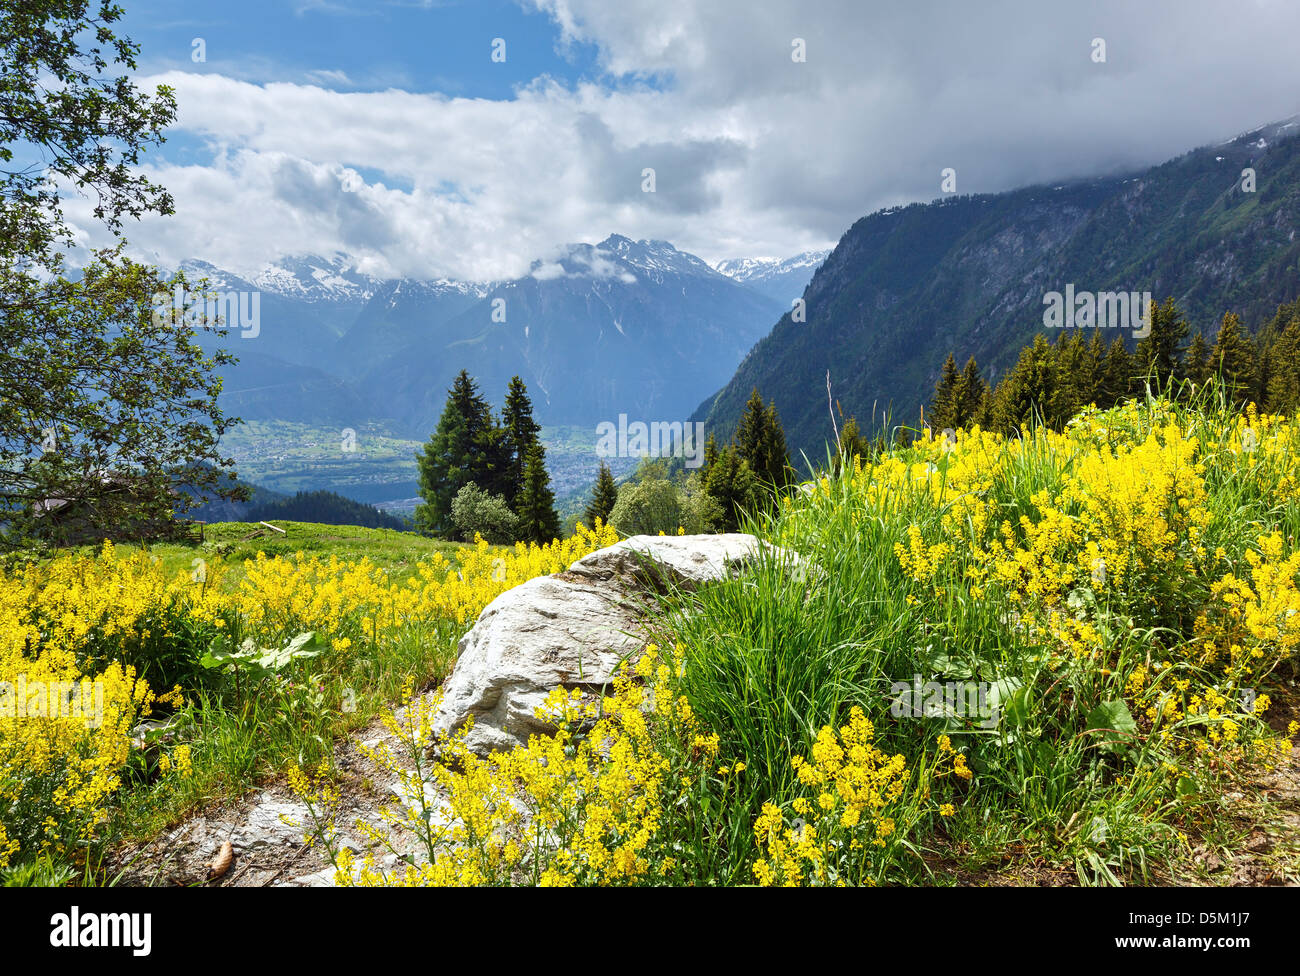 Yellow wild flowers on summer mountain slope (Alps, Switzerland) Stock Photo